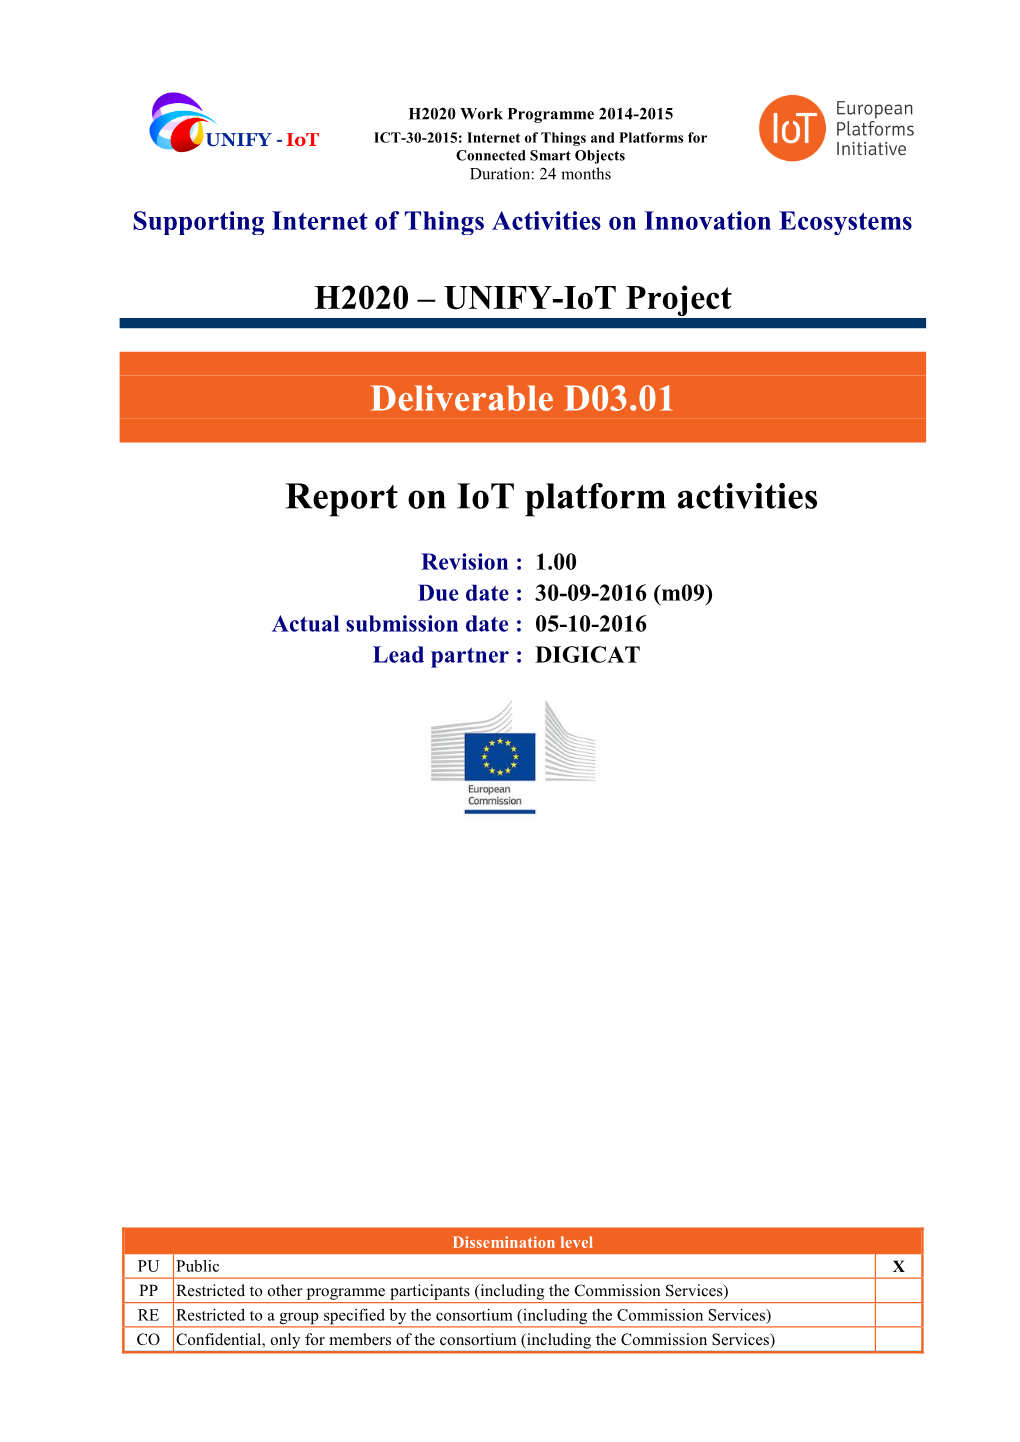 Deliverable D03.01 Report on Iot Platform Activities